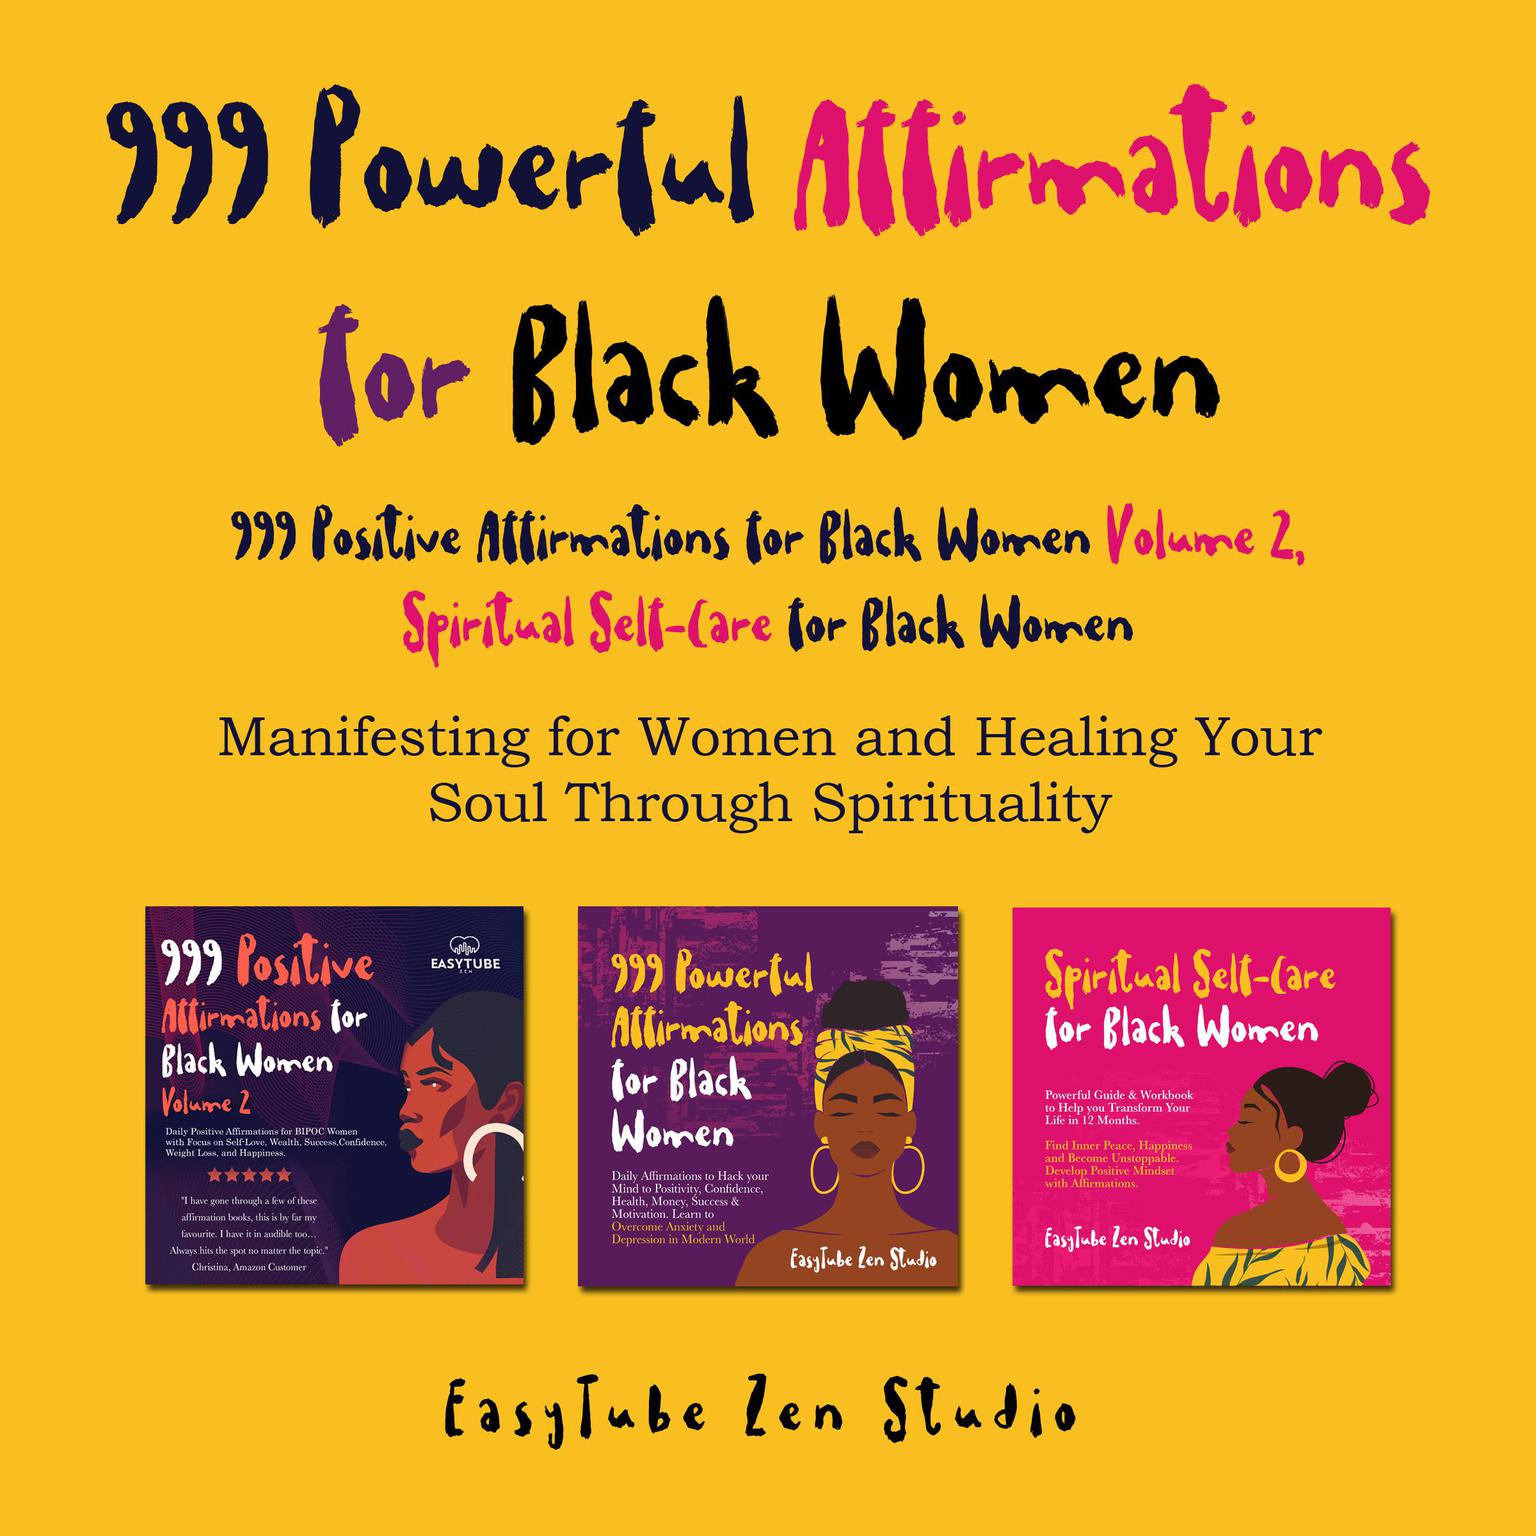 999 Powerful Affirmations for Black Women, 999 Positive Affirmations for Black Women Volume 2, Spiritual Self-Care for Black Women Audiobook, by EasyTube Zen Studio